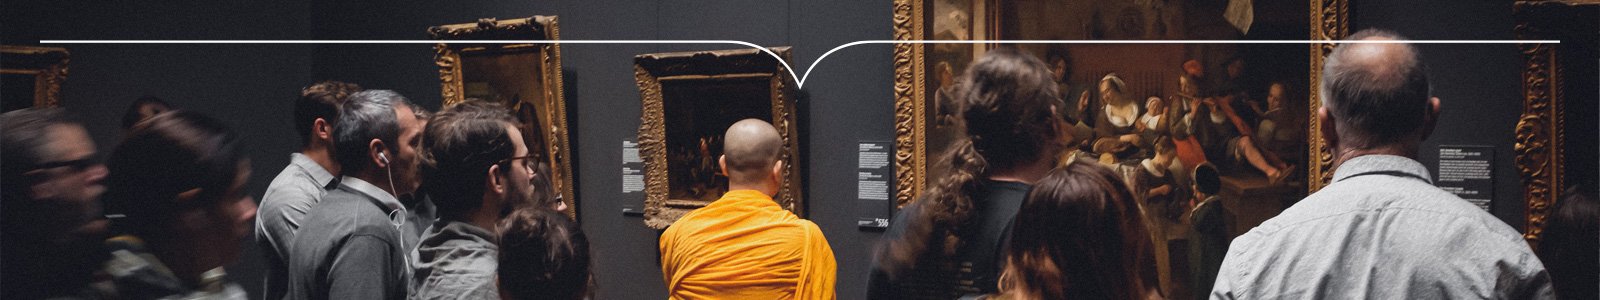 Kale monnik in oranje toga staat tussen toeristen voor een schilderij in een museum